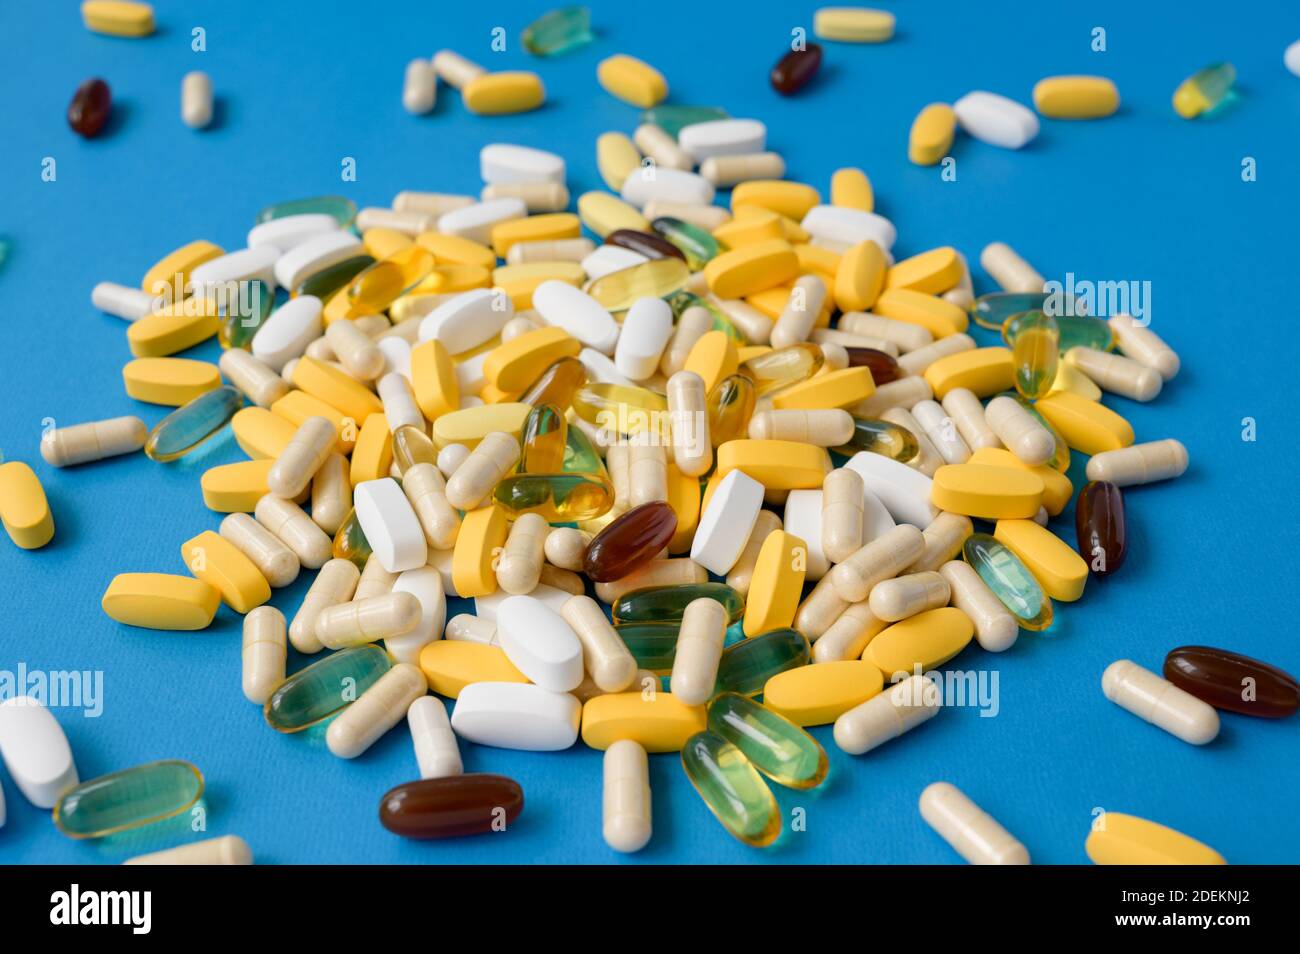 Viele Pillen Tabletten Softgels und Kapseln auf blauer Oberfläche Stockfoto